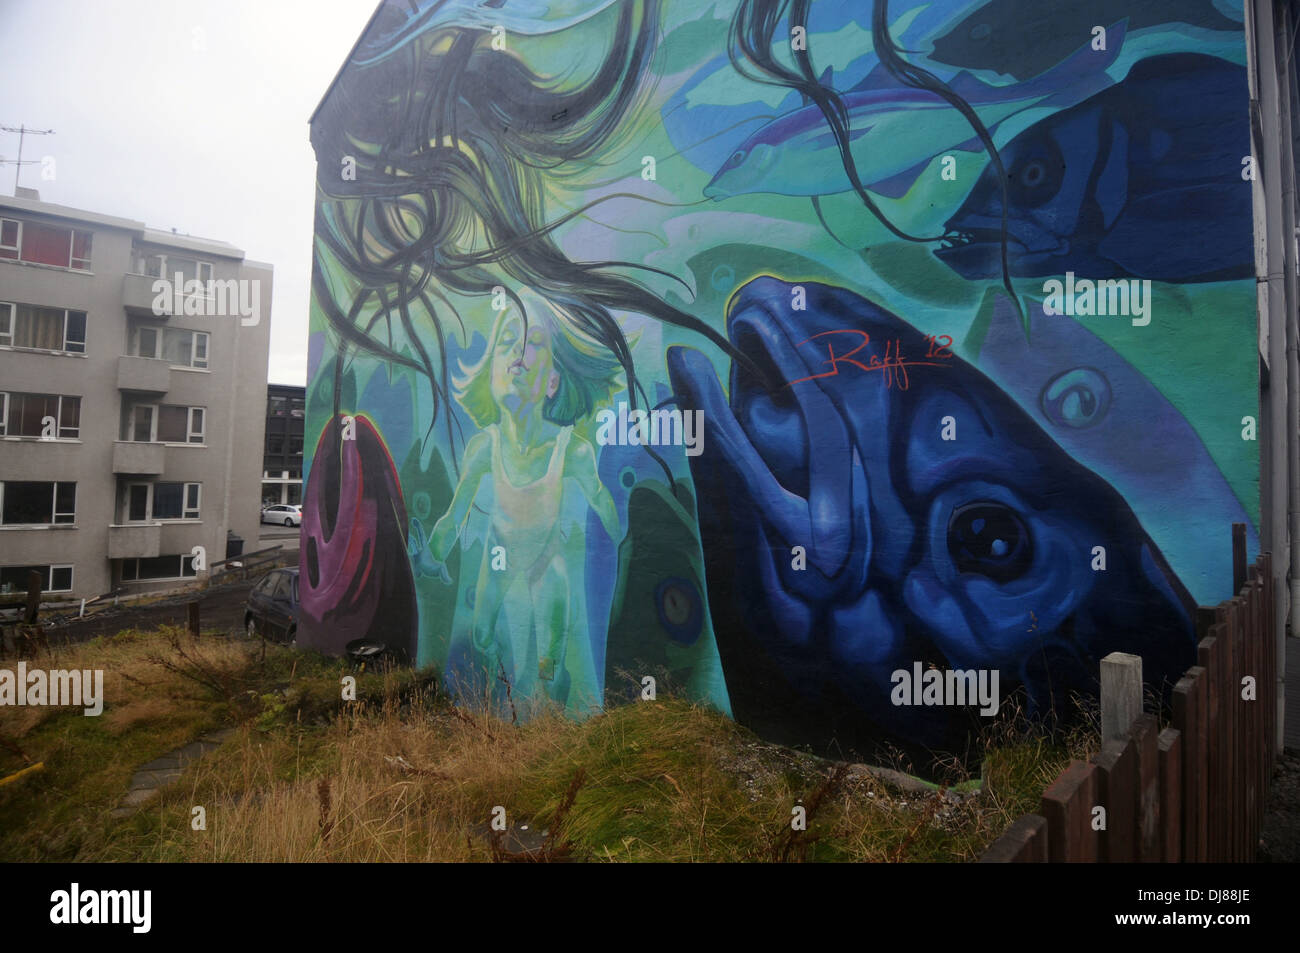 Fototapete auf Wand Wohnblocks in der Innenstadt von Reykjavik Darstellung Isländer Abhängigkeit auf dem Meer und Fischerei, Island Stockfoto